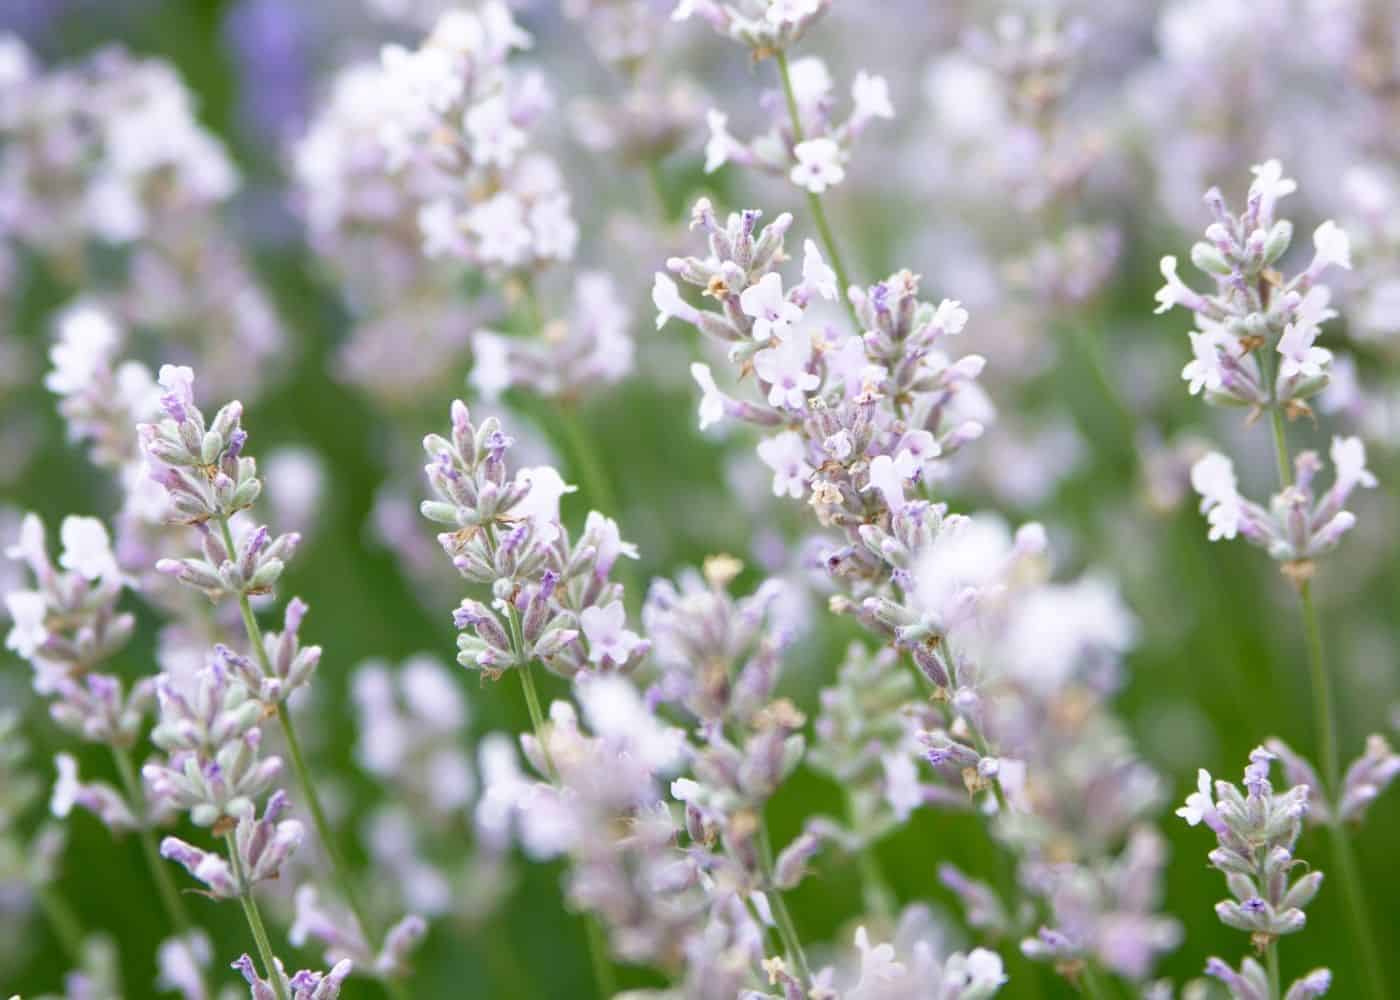 White lavender